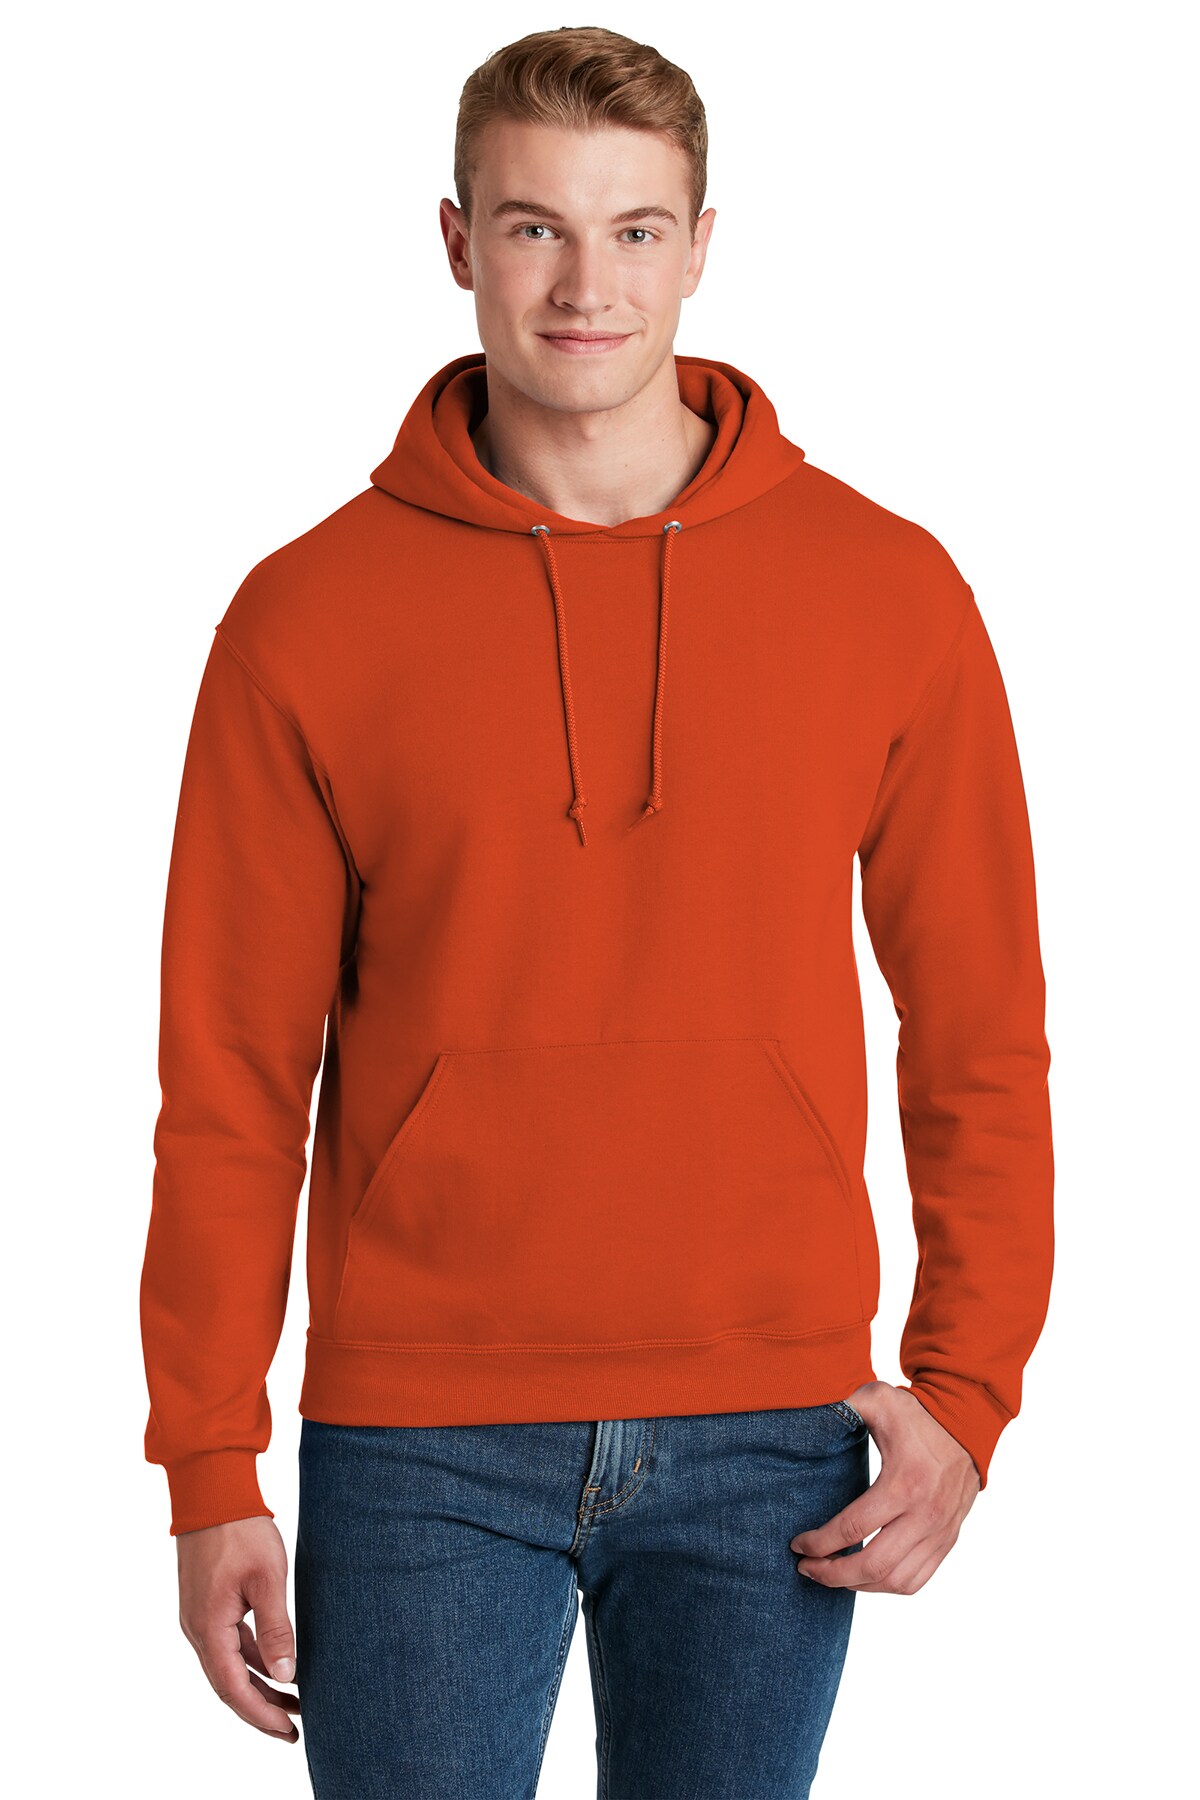 Jerzees&#xAE; NuBlend Pullover Hooded Sweatshirt Sleeve Hoodie For Adult